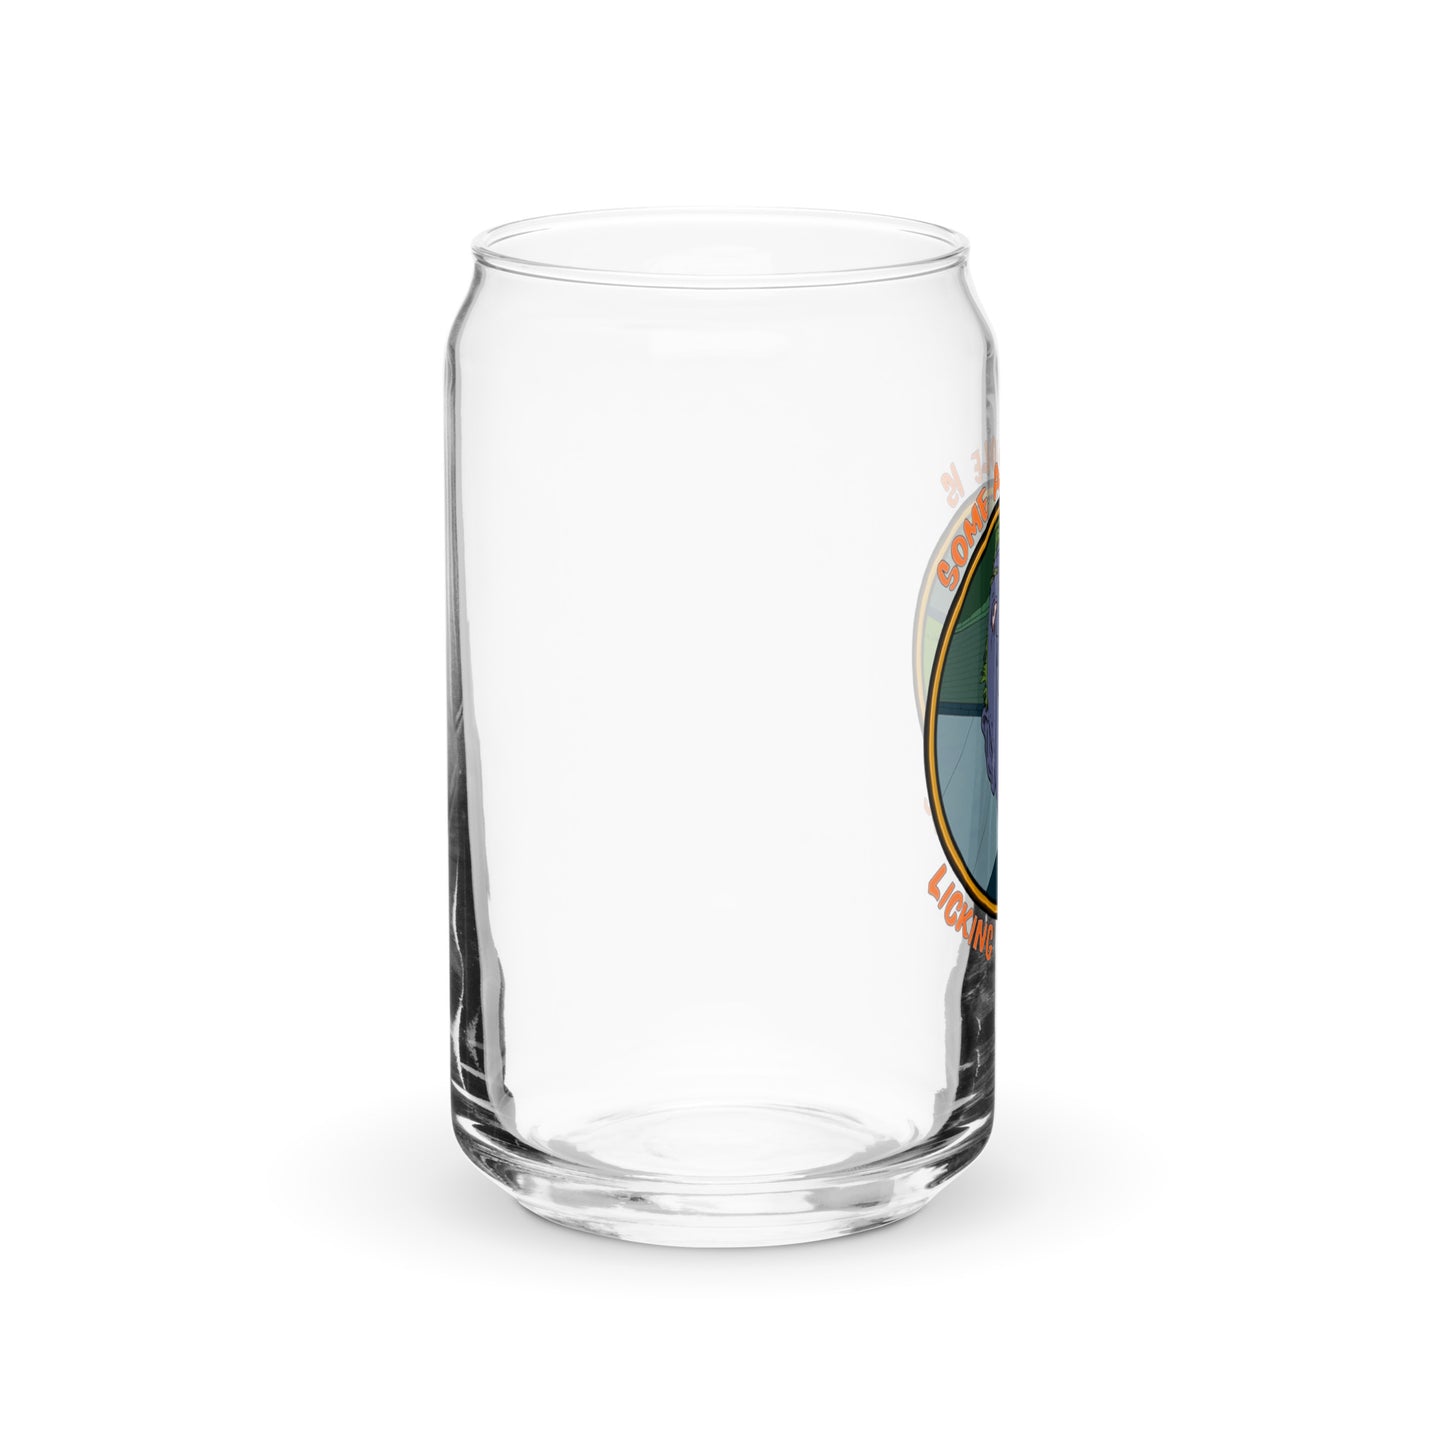 Peephole Can-shaped glass